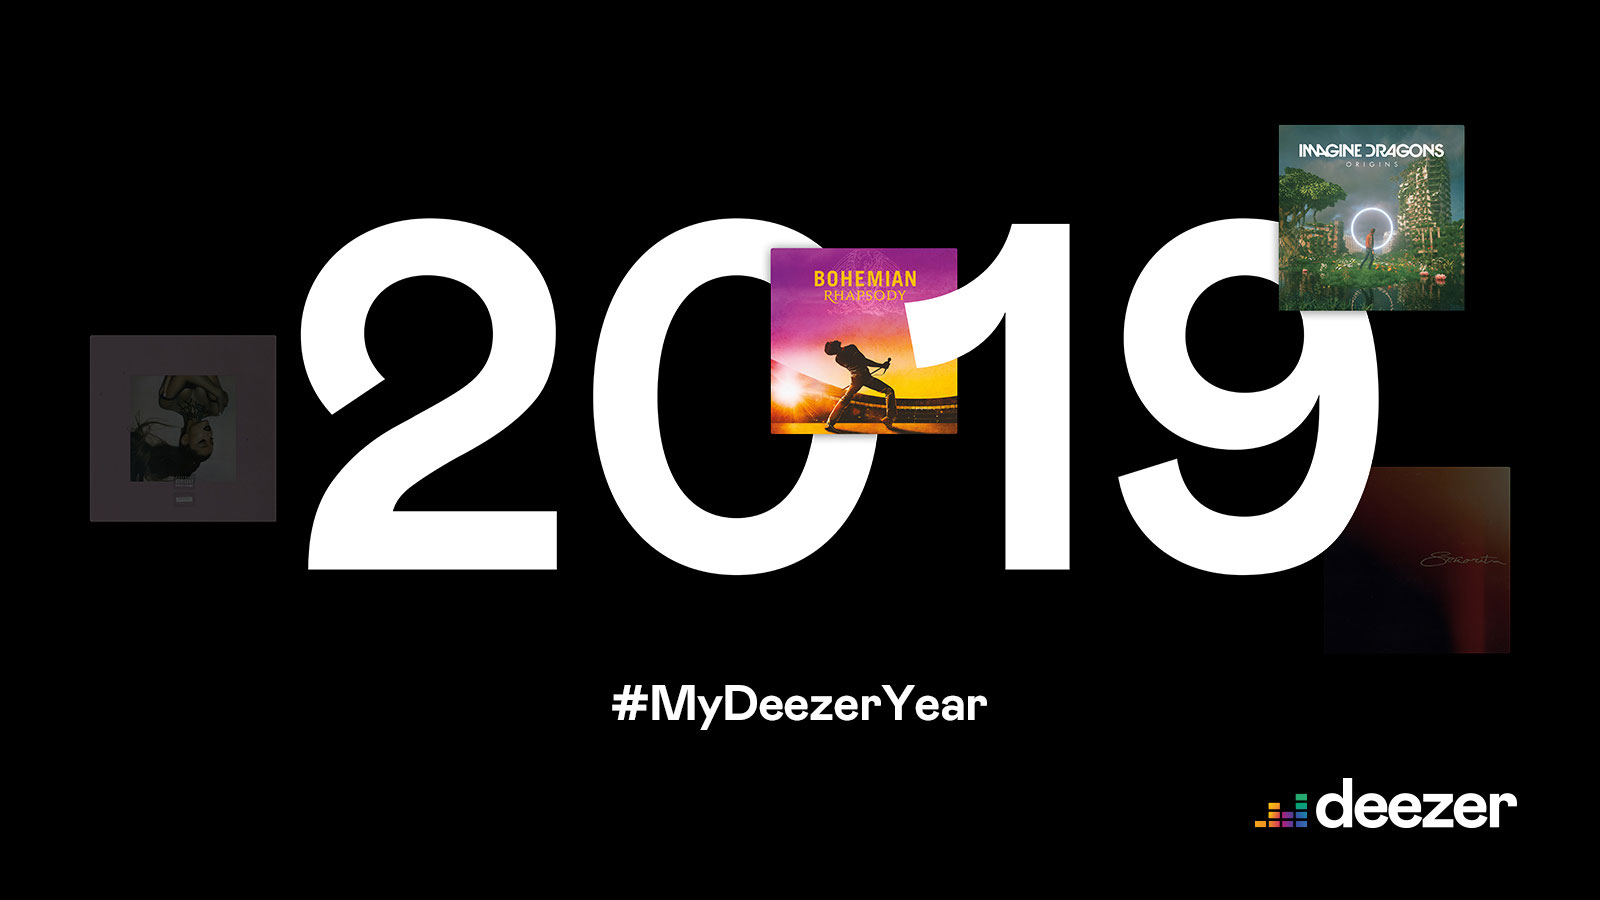 My deezer year 2019